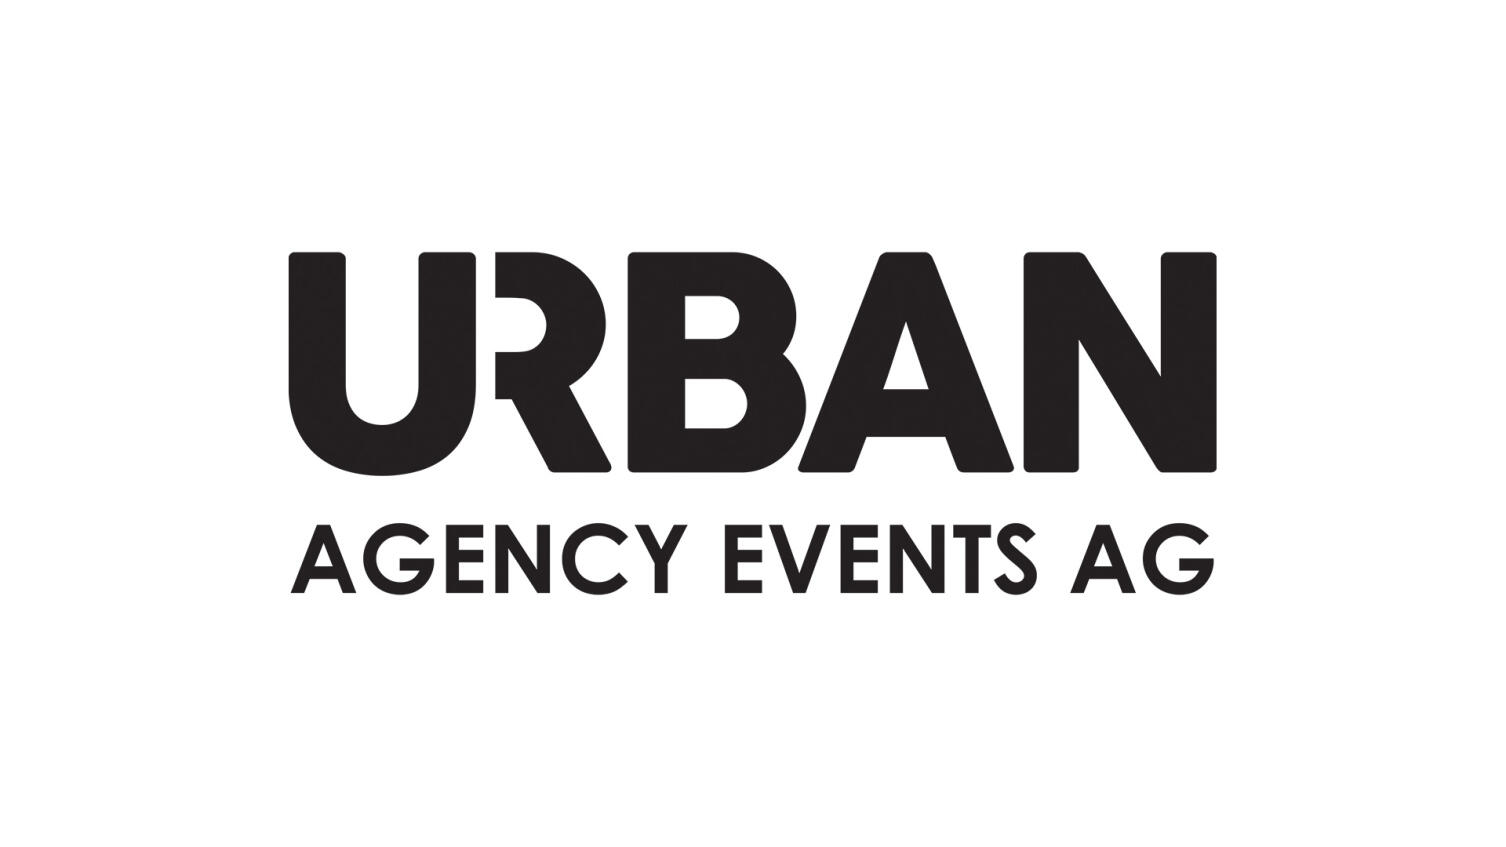 Urban Agency Events AG